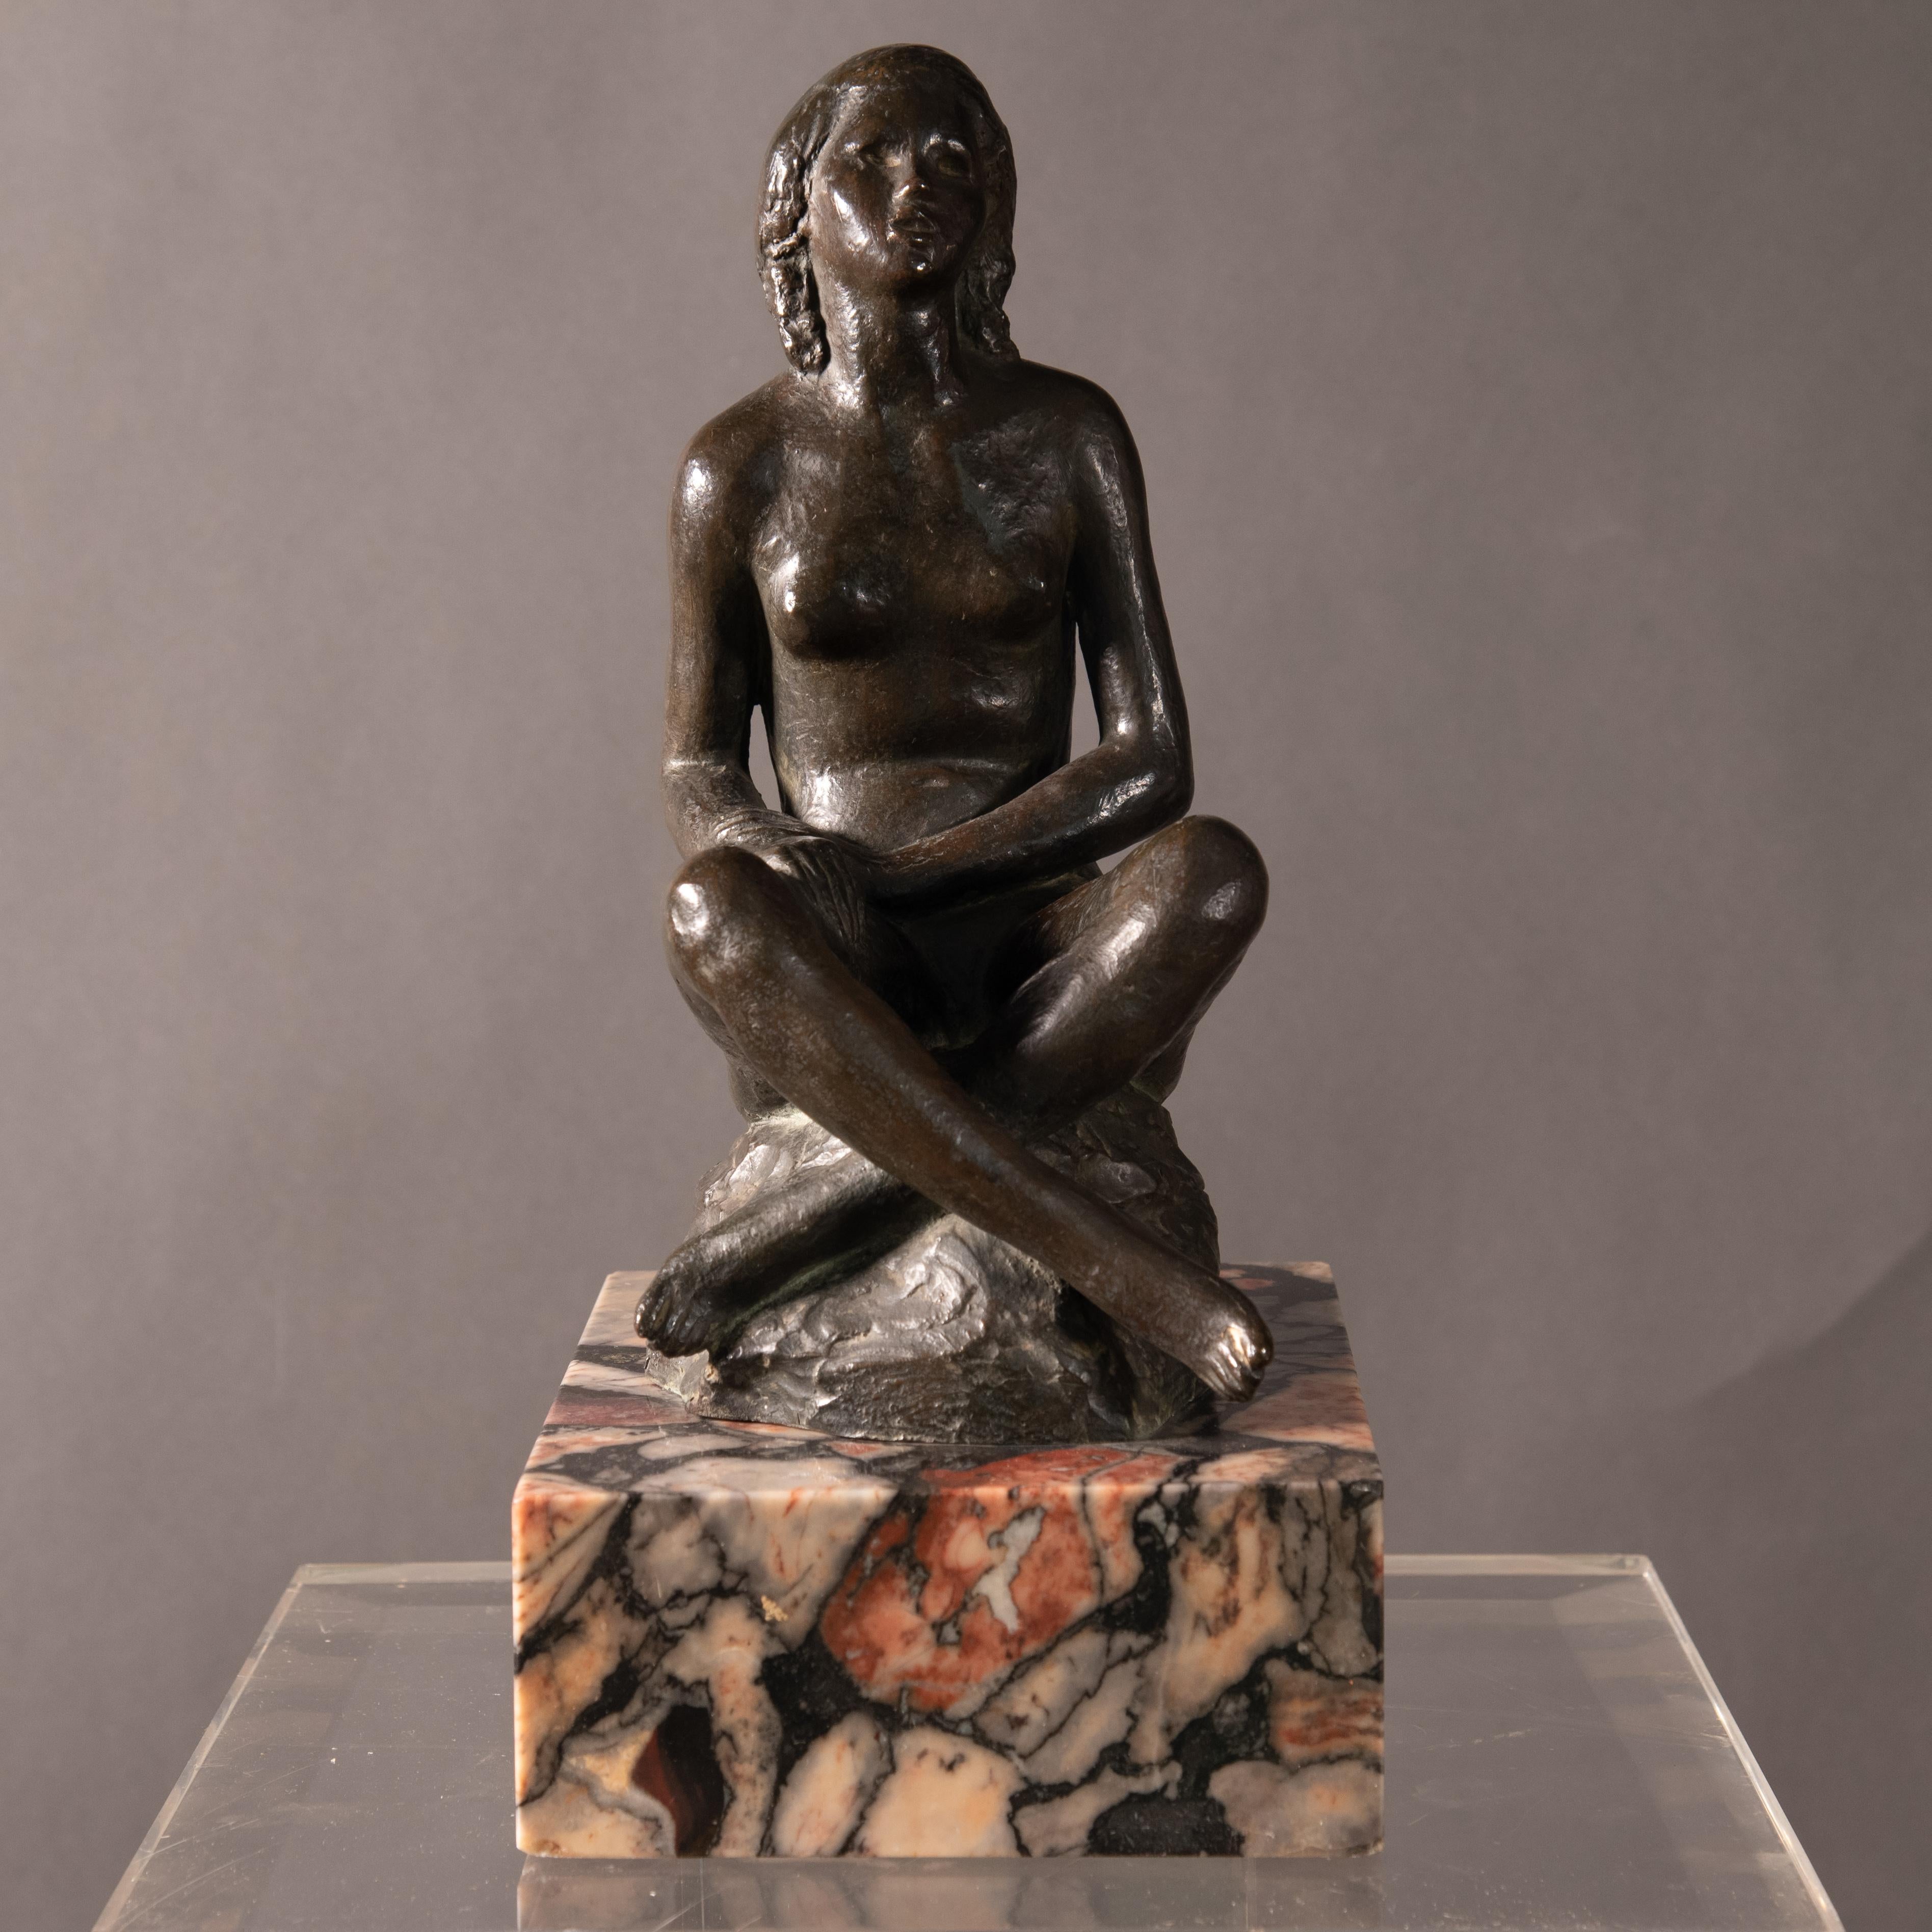 Merveilleuse sculpture italienne représentant une jeune fille assise.
L'œuvre d'art repose sur une base carrée en marbre.
Signé sur la base 